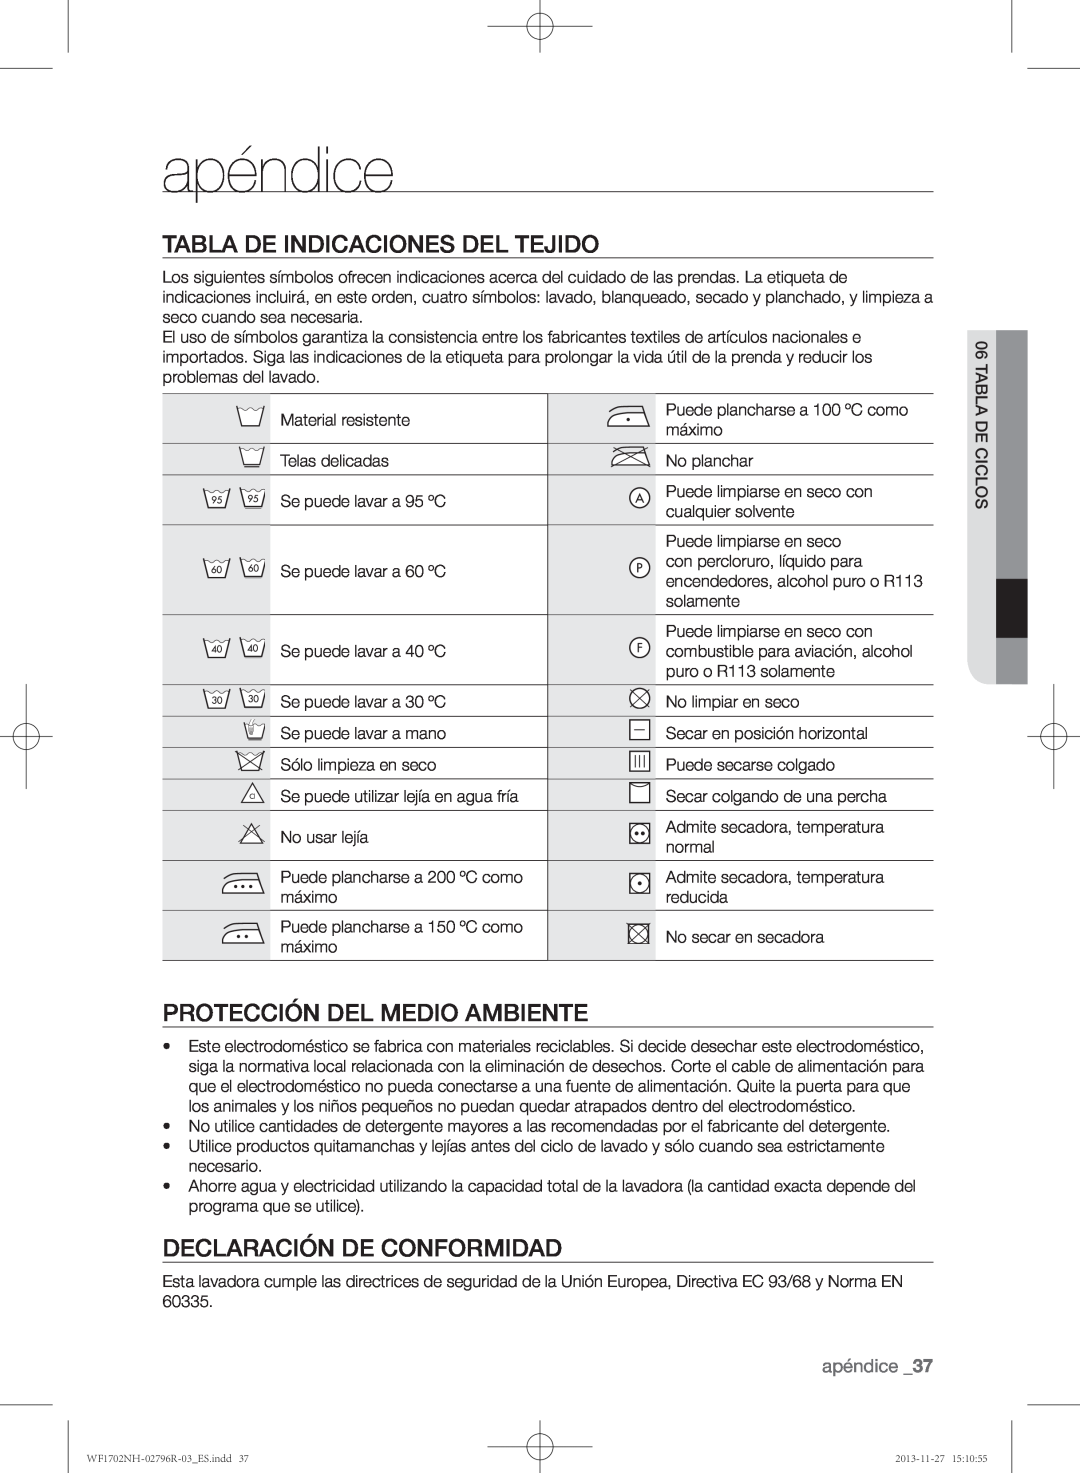 Samsung WF1702NHW/XEC, WF1702NHWG/XEC manual apéndice, Tabla de indicaciones del tejido, Protección del medio ambiente 